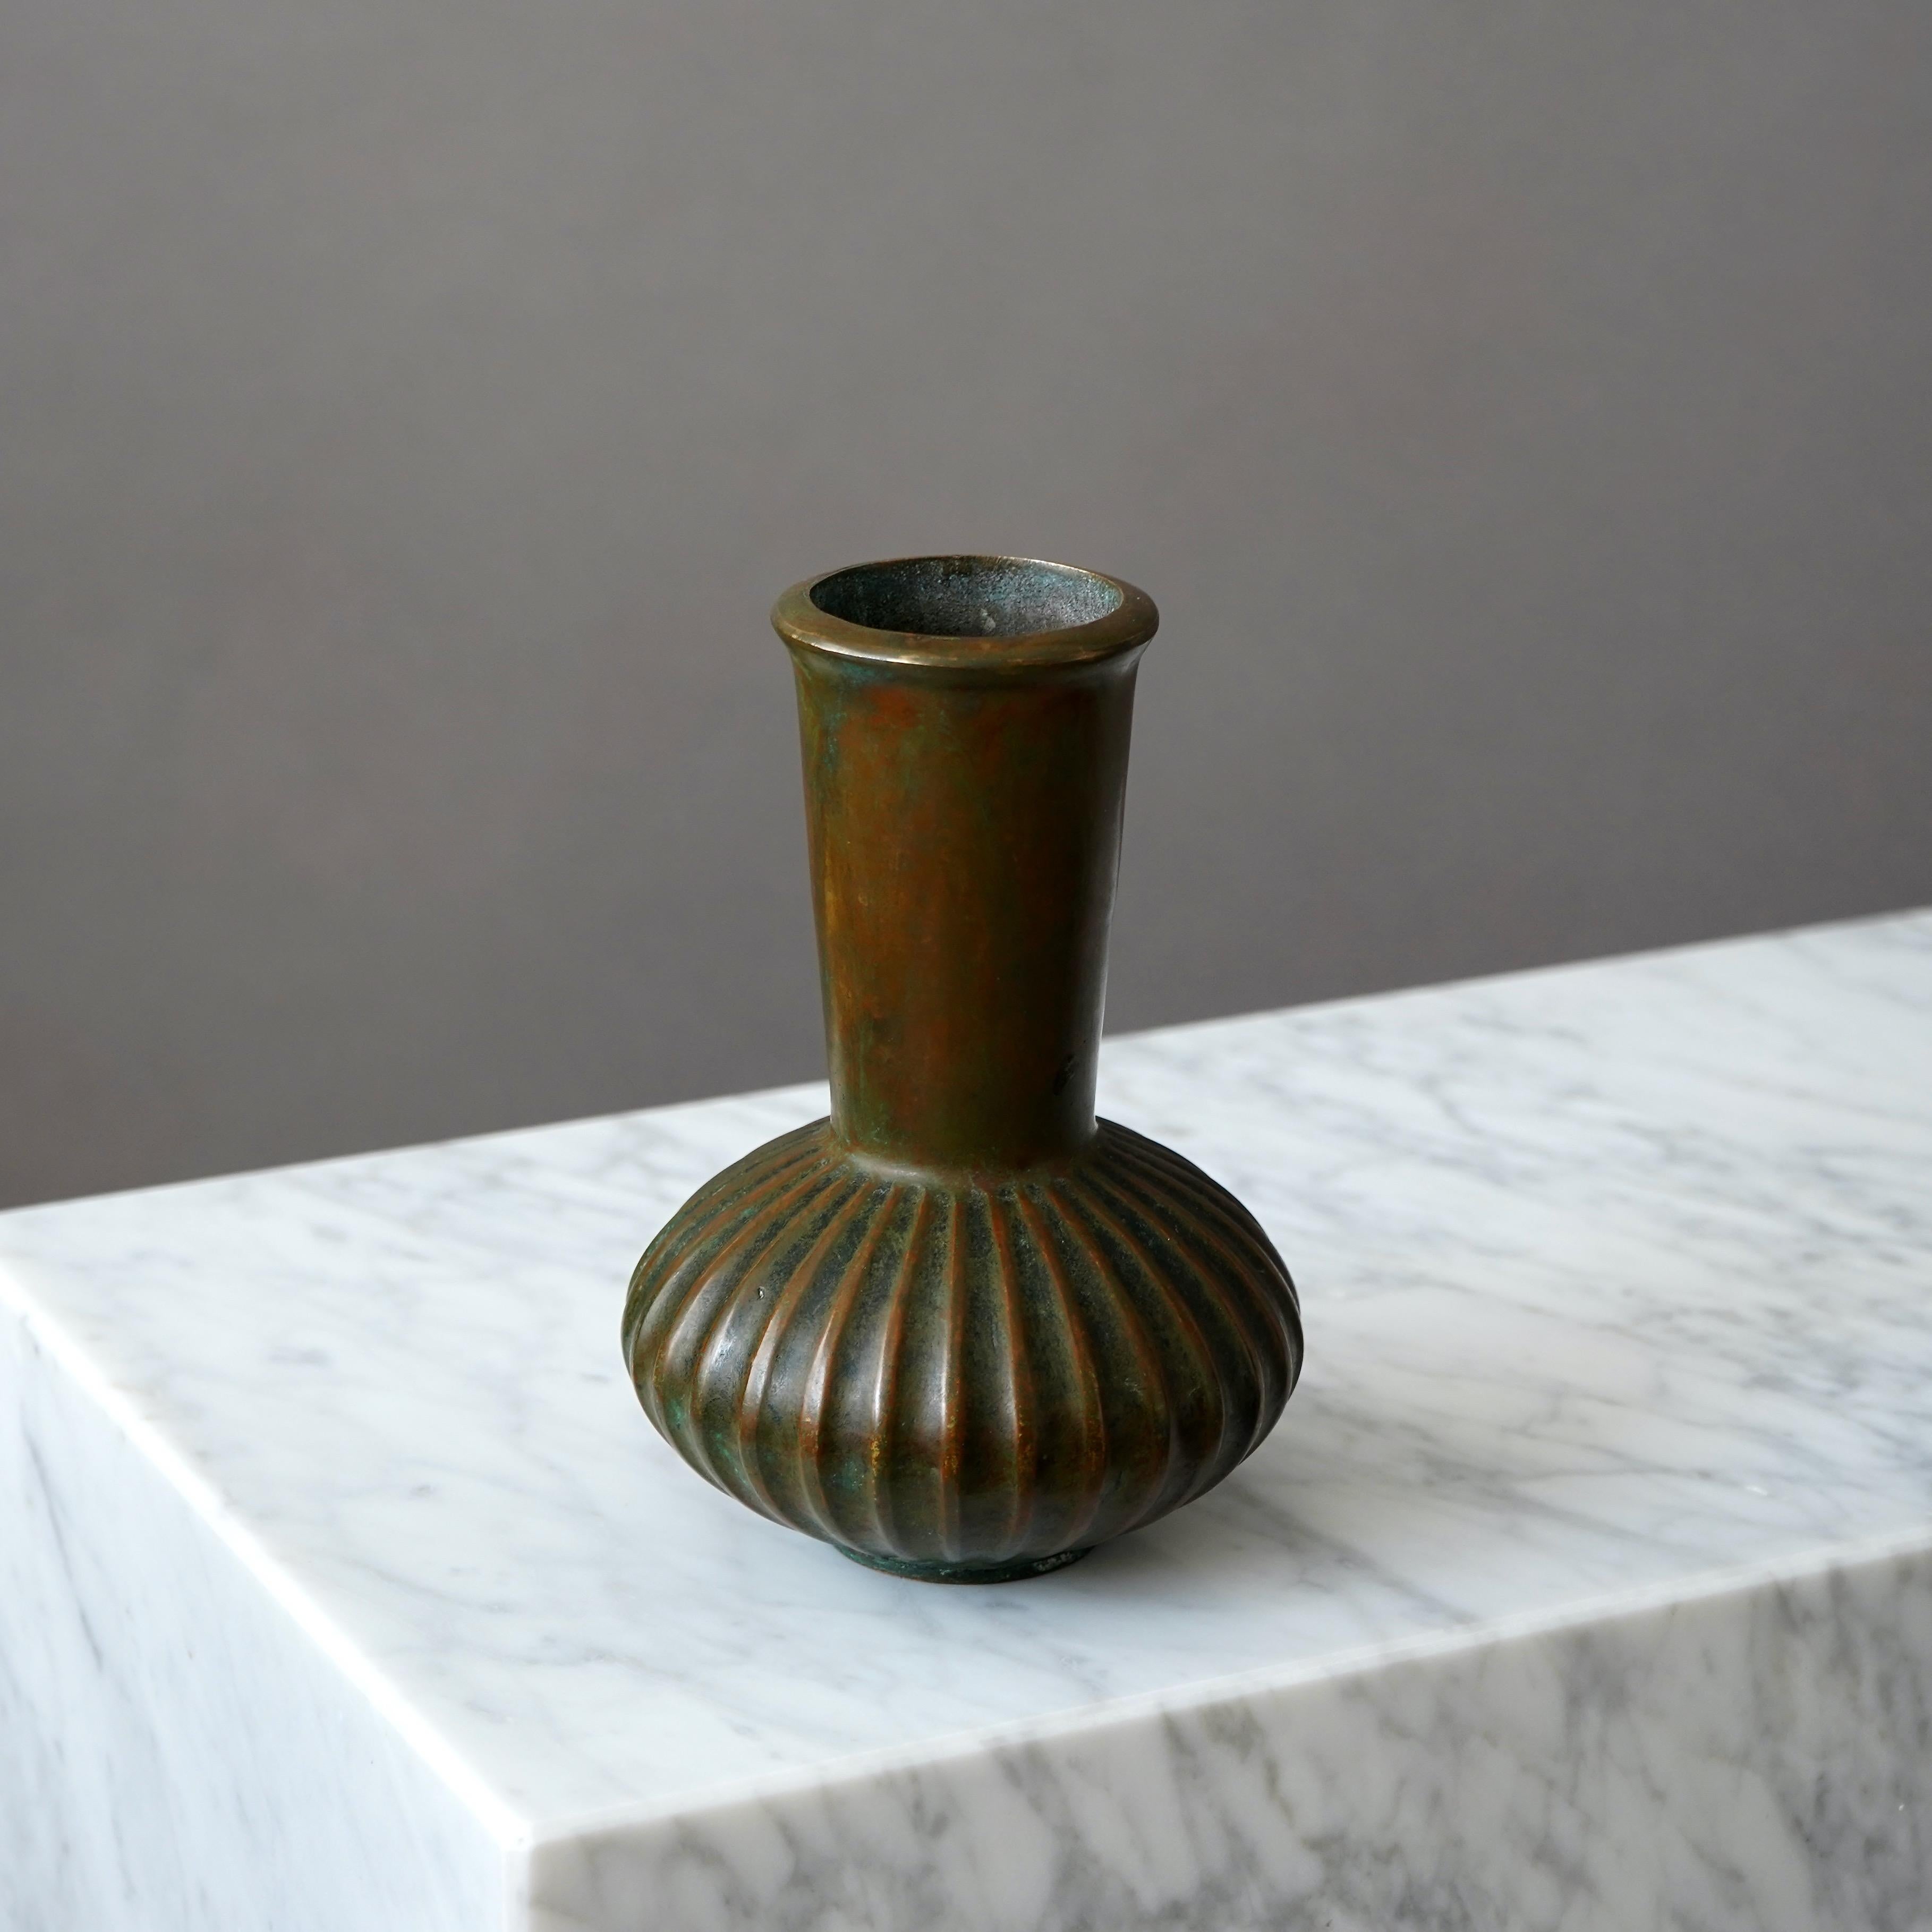 Un magnifique vase en bronze avec une patine étonnante. Conçu par Sune Bäckström à Malmoe, en Suède, dans les années 1920.  

Excellent état.
Estampillé 